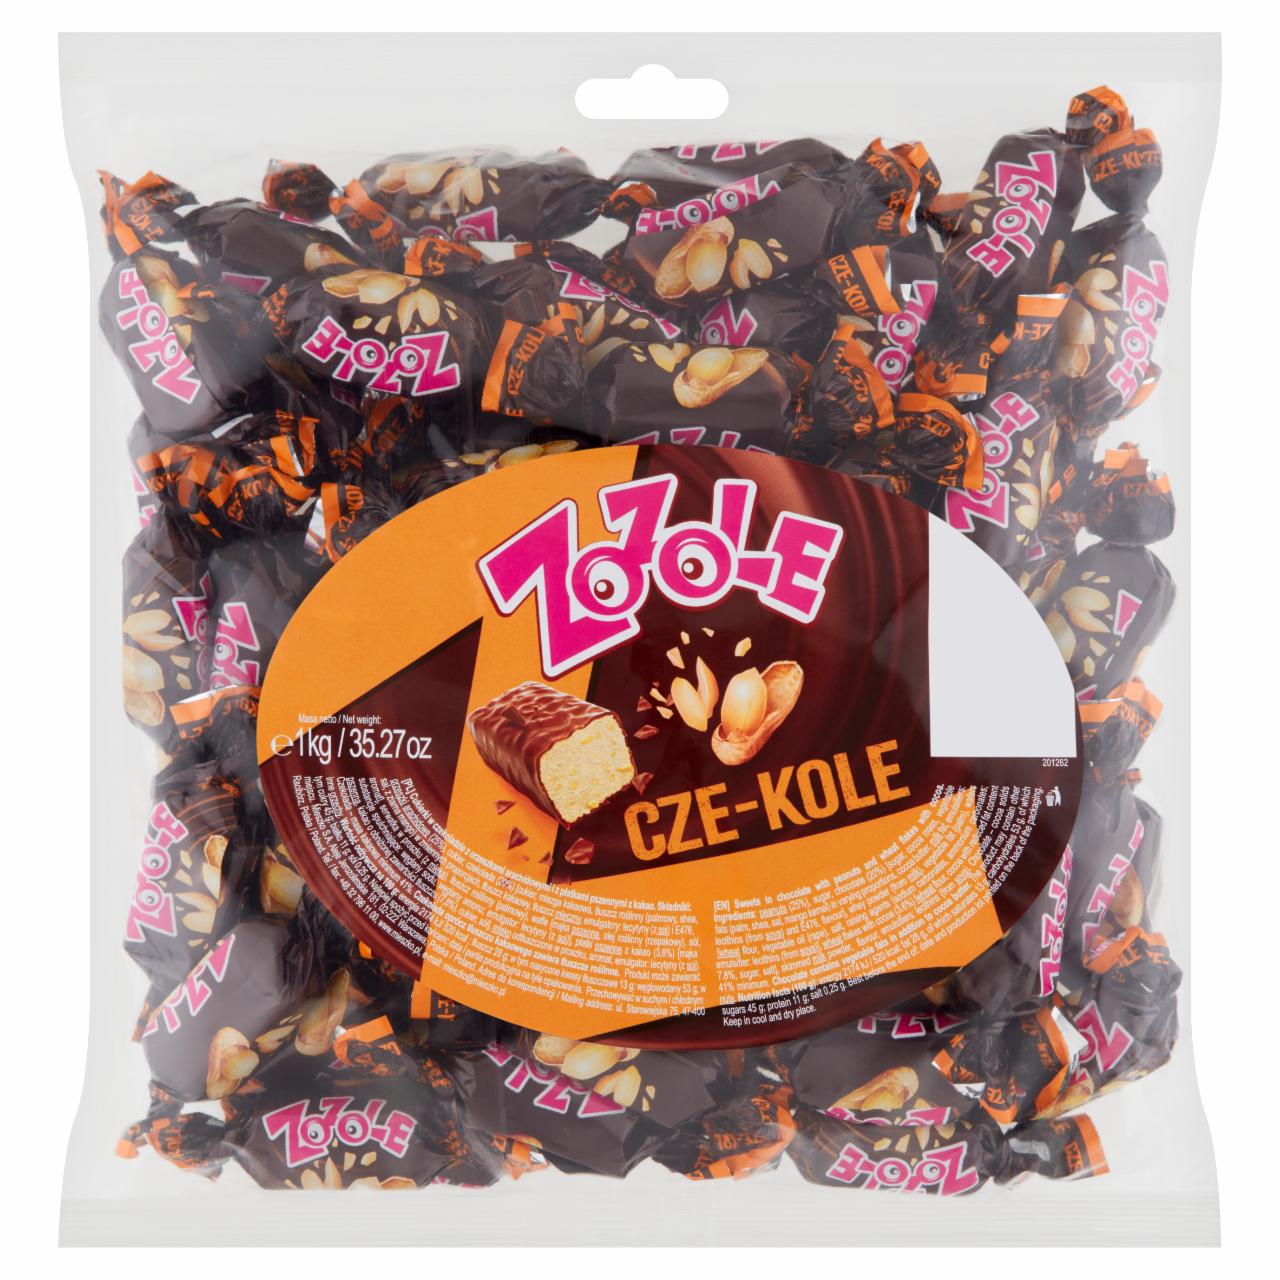 Zdjęcia - Zozole Cze-kole Cukierki w czekoladzie z orzeszkami arachidowymi i płatkami pszennymi 1 kg